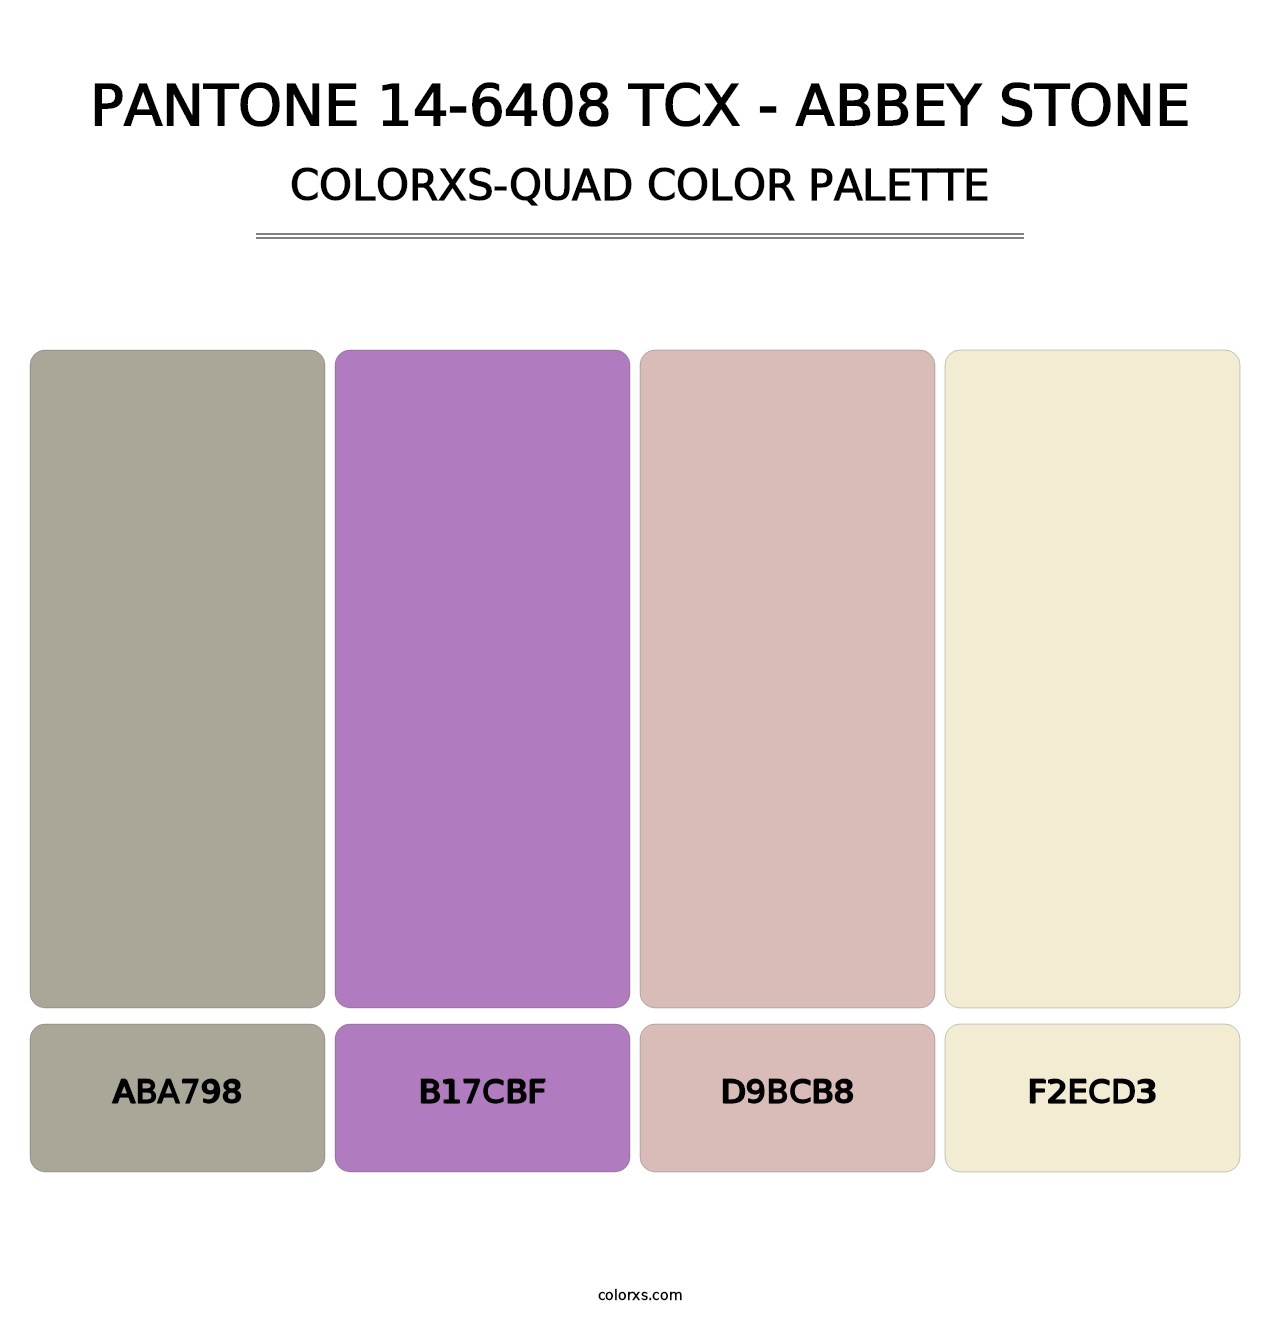 PANTONE 14-6408 TCX - Abbey Stone - Colorxs Quad Palette